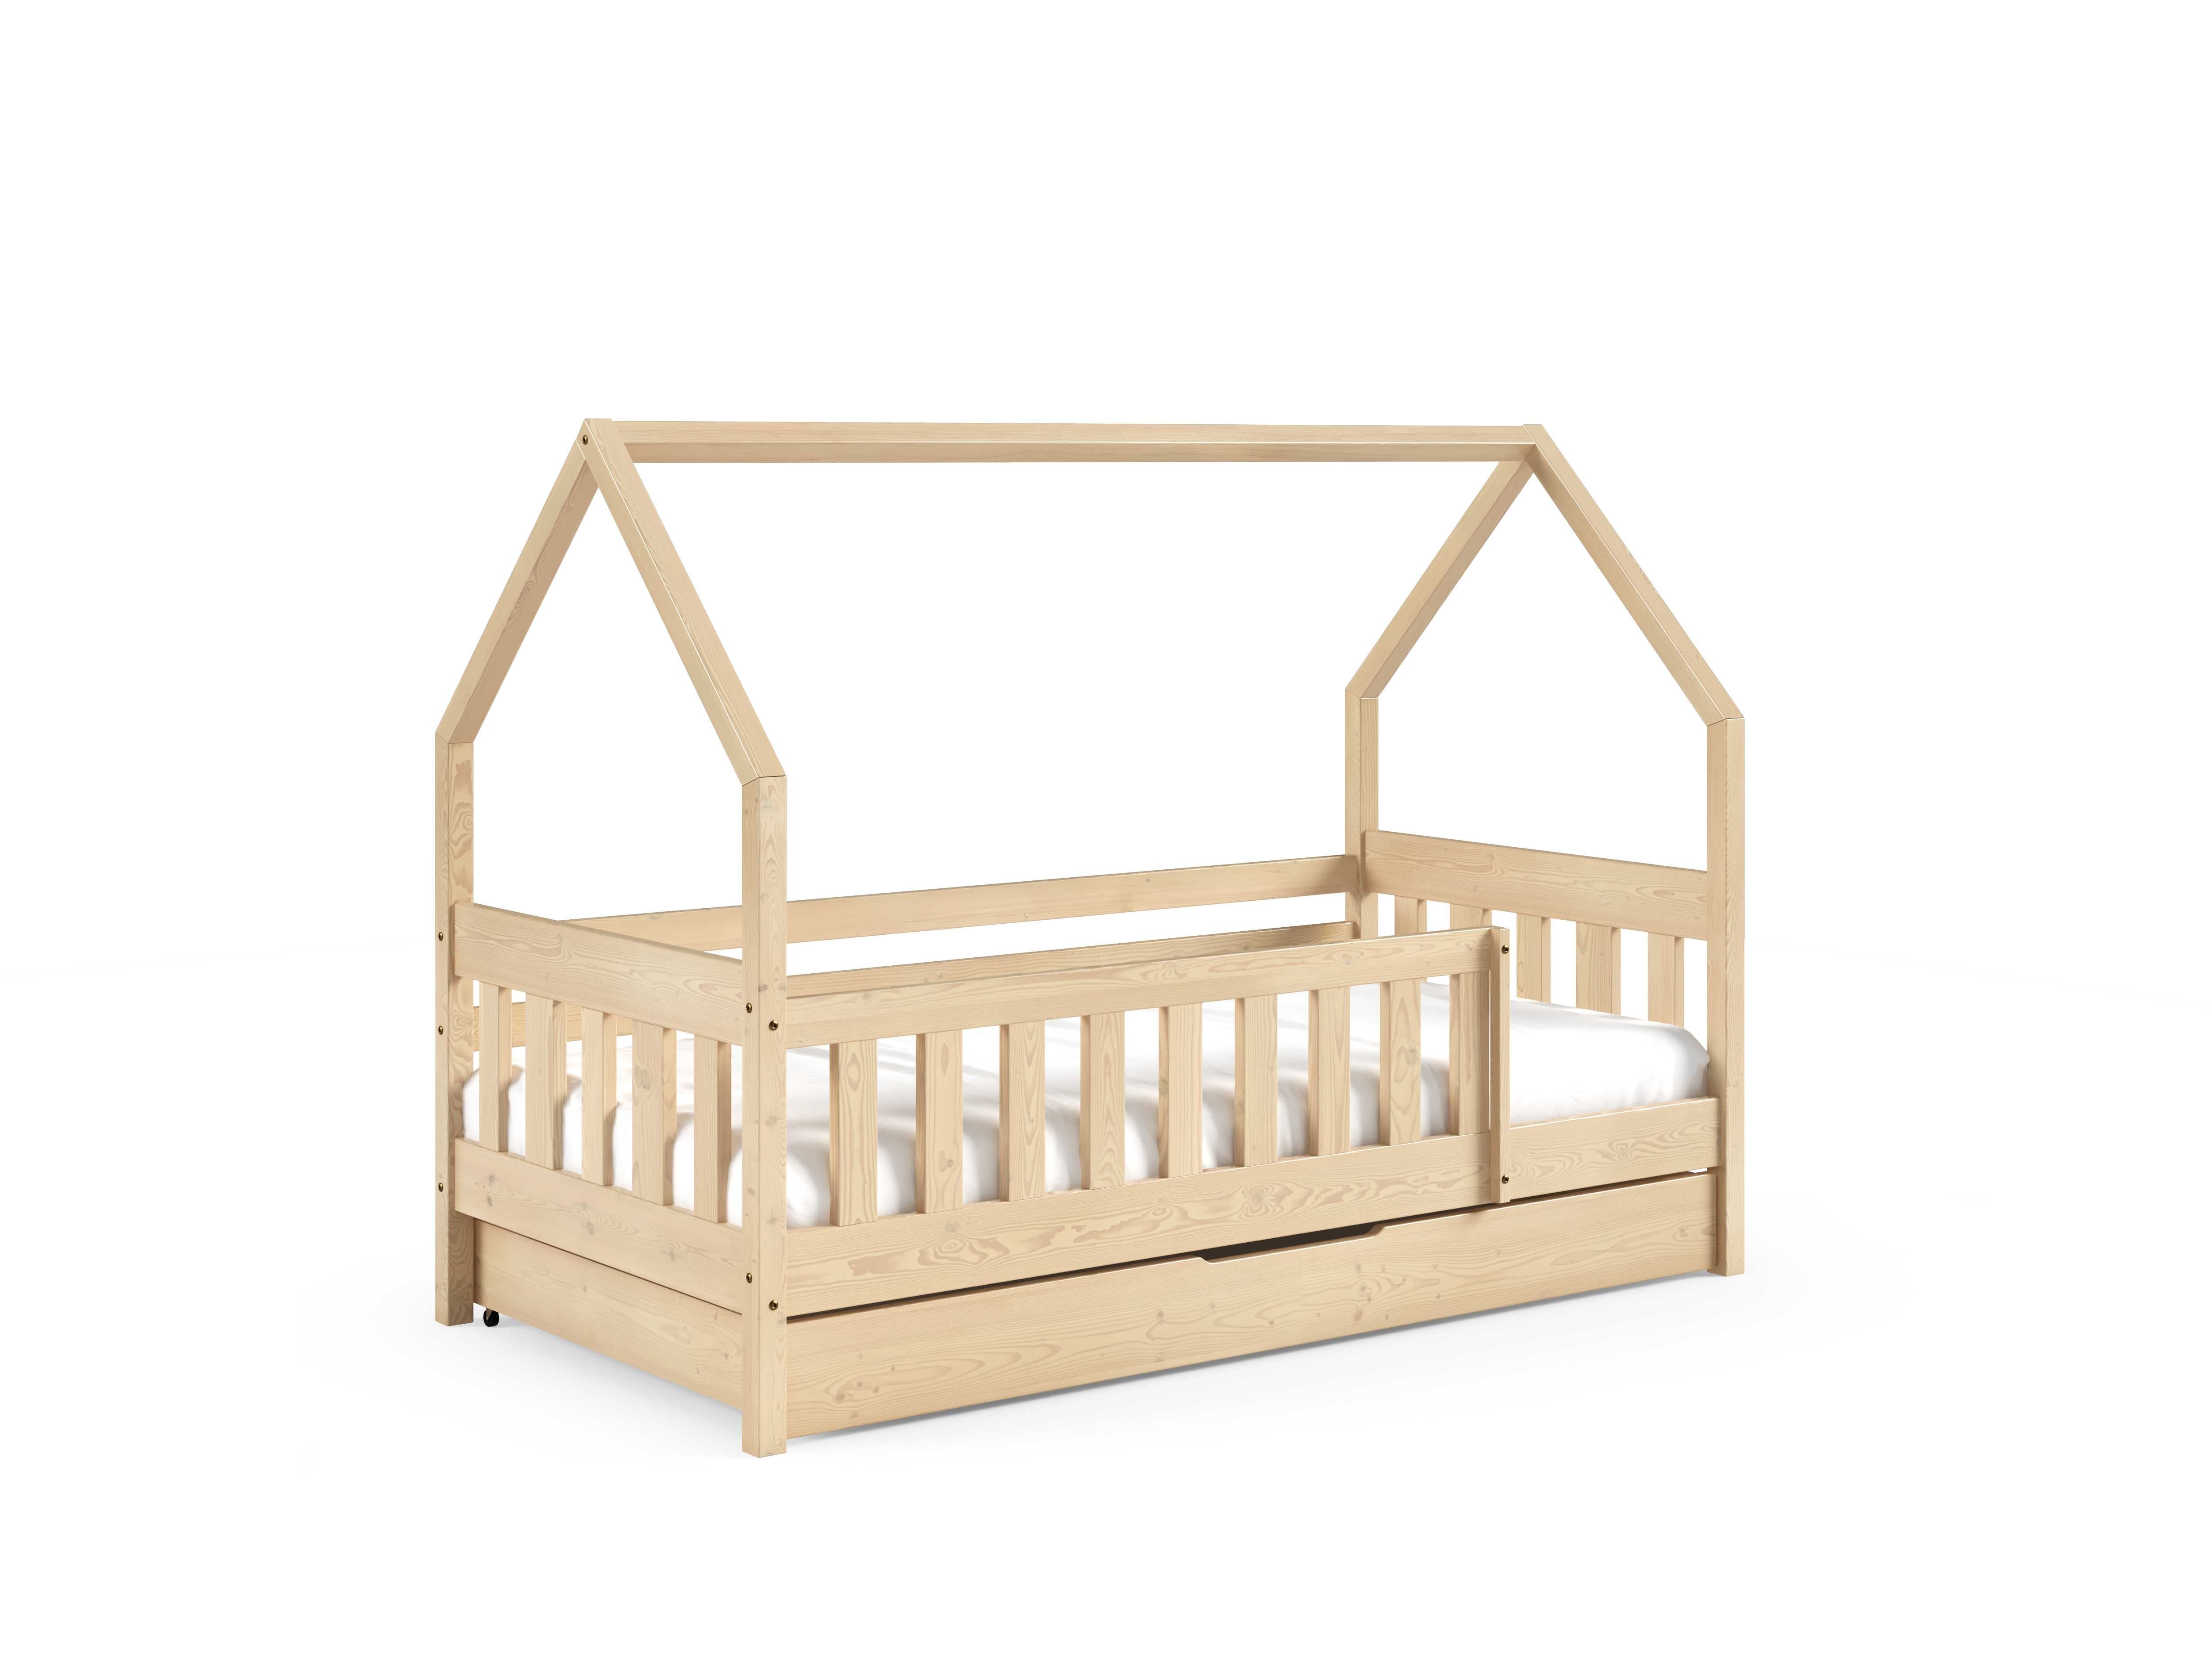 Drewniane łóżko dziecięce LUNA w stylu skandynawskim